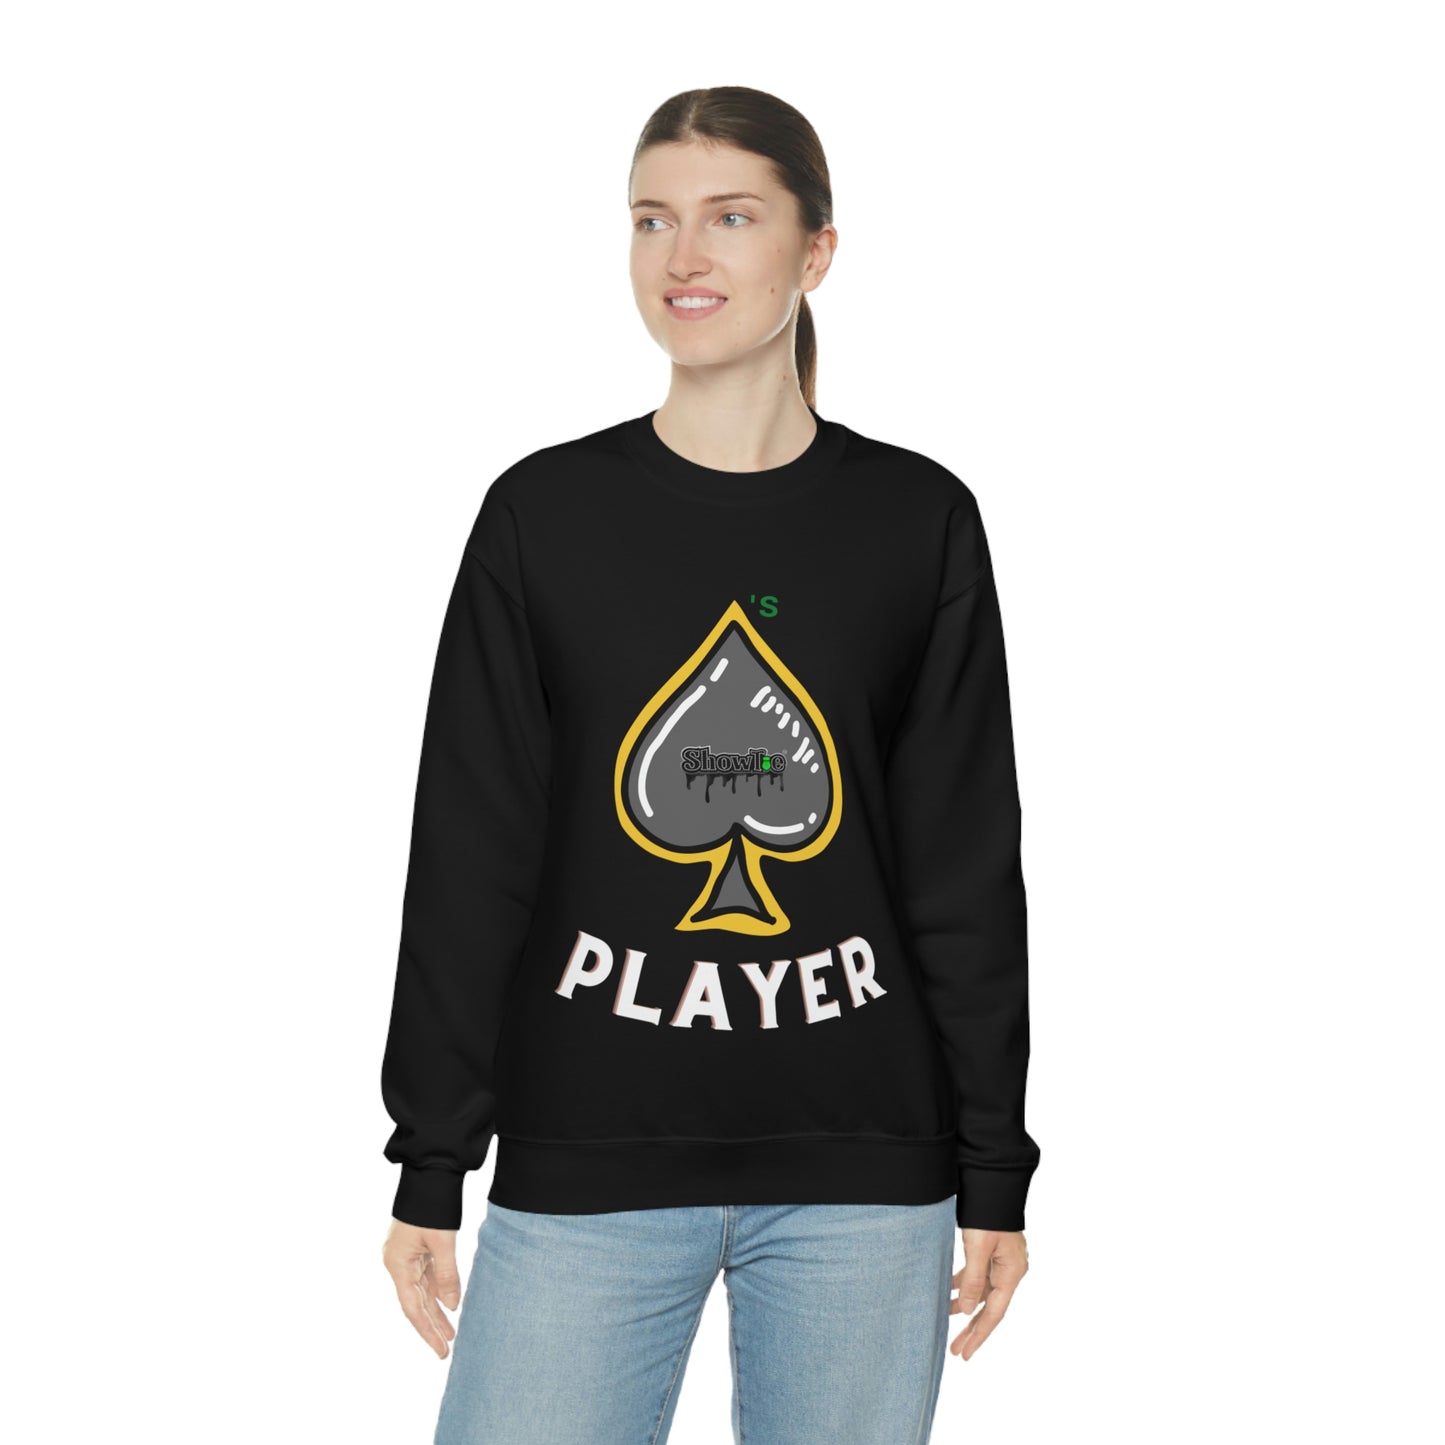 Showtie Spades Player Sweatshirt